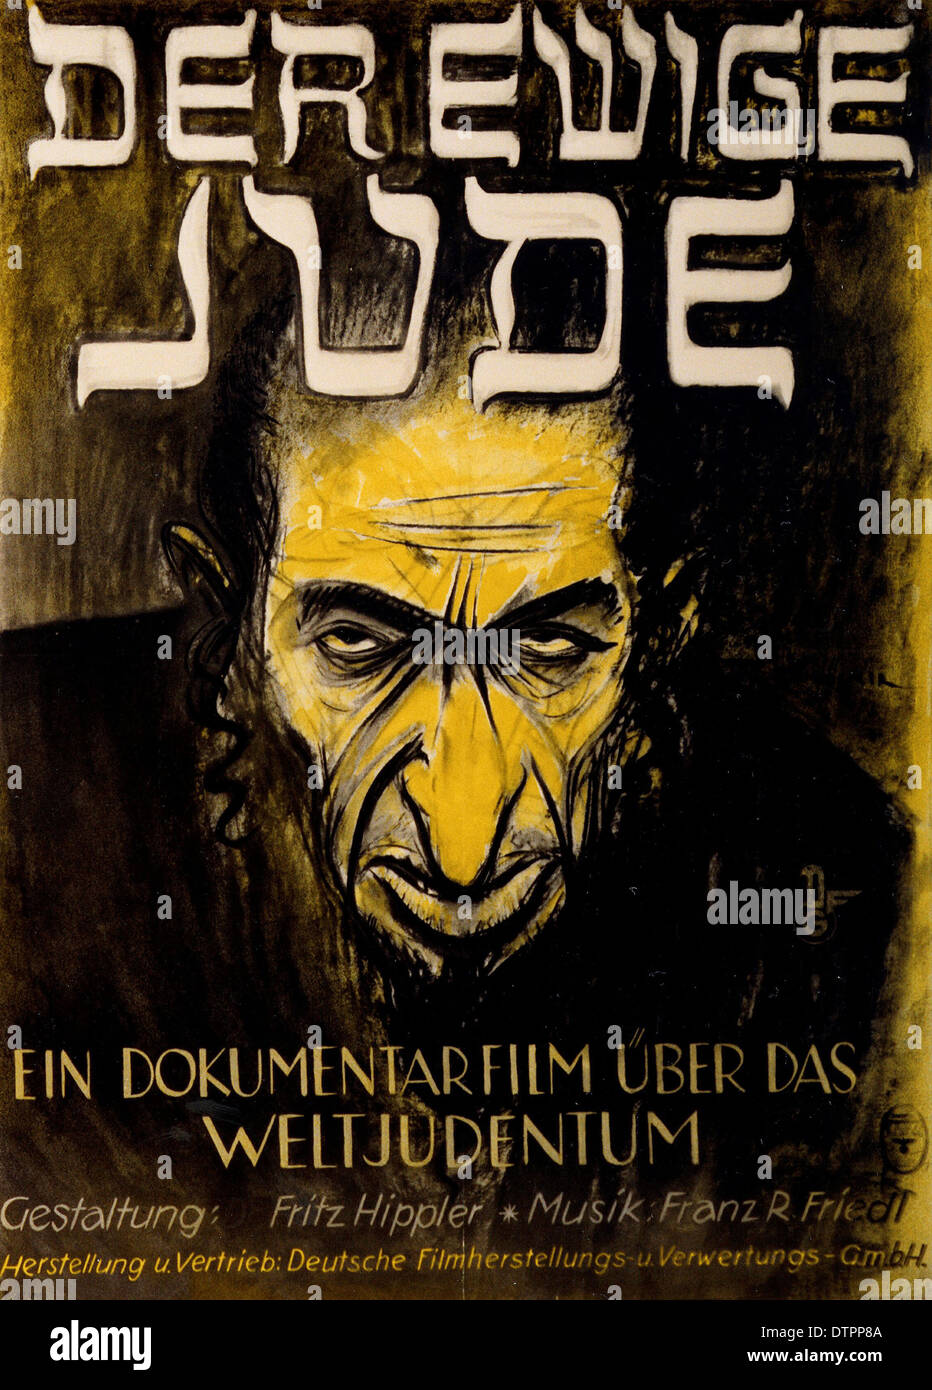 Anti-semita poster di propaganda dal regime nazista tedesco era in cui l'Ebreo è mostrato come un brutto, arrabbiato cerca uomo con prominente naso esagerato Foto Stock